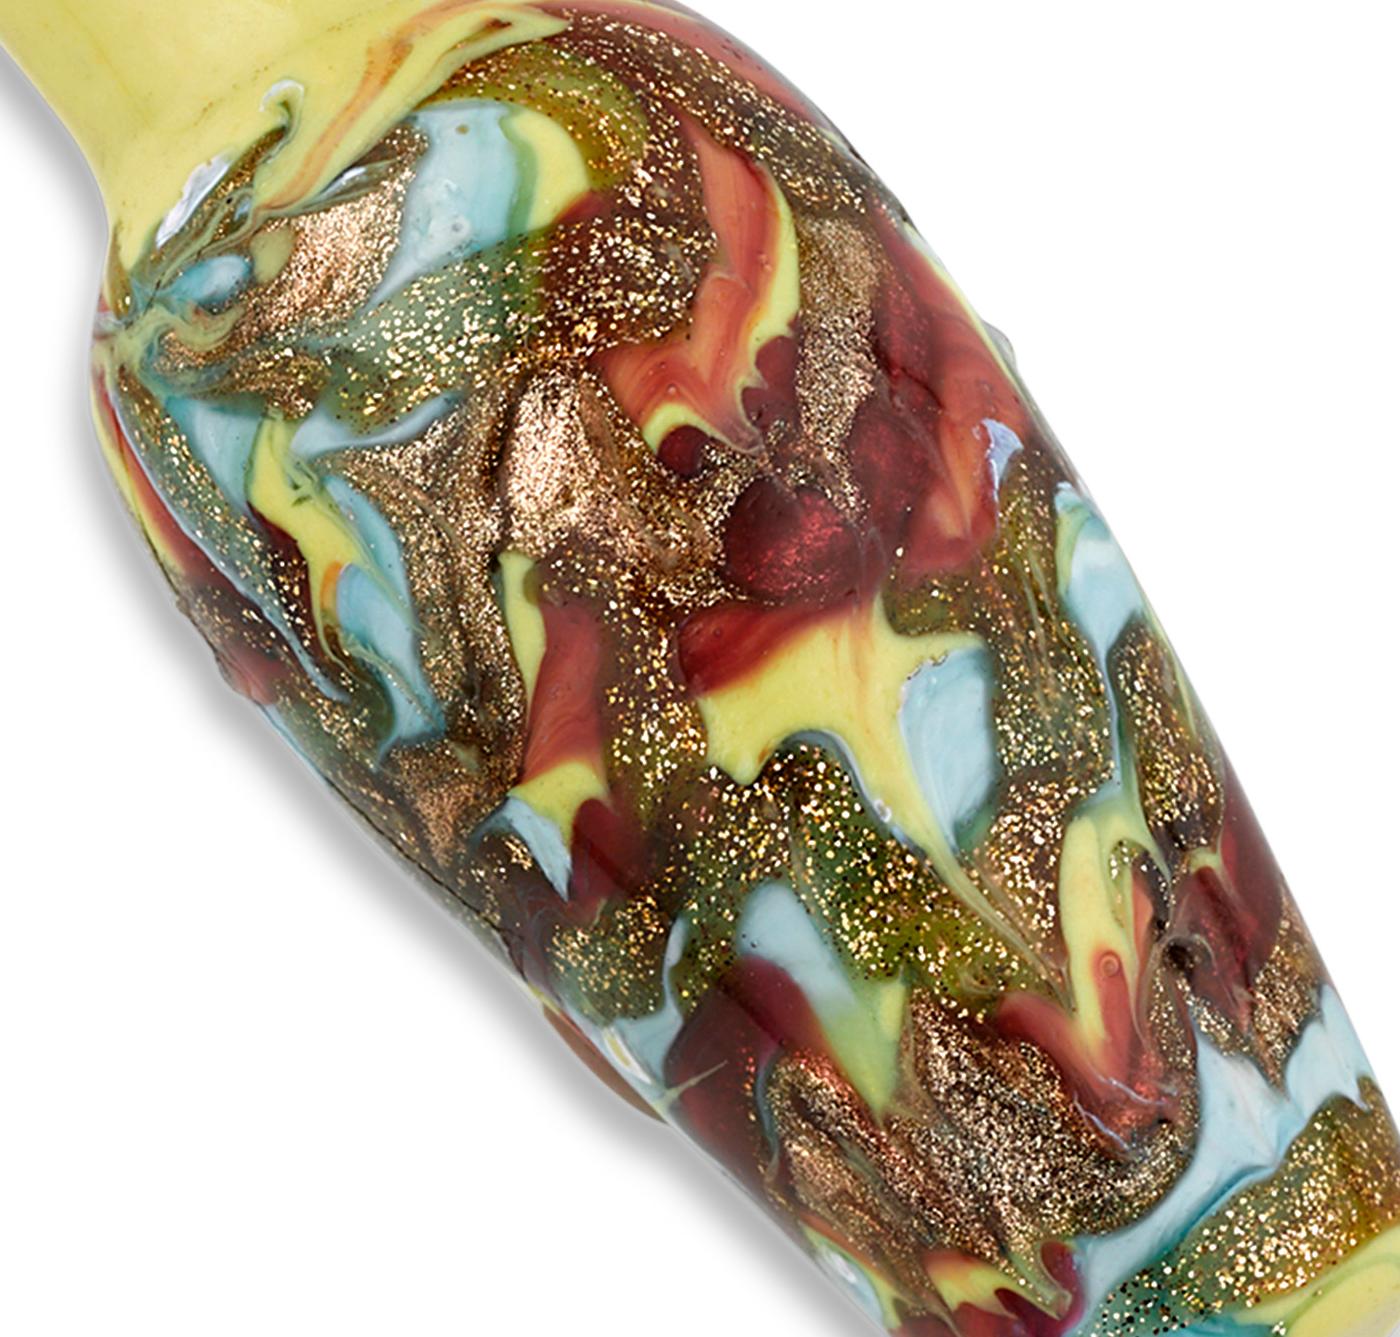 Fabriqué en verre vénitien, ce flacon de parfum exceptionnel affiche un motif marbré élaboré de rouges, jaunes, bleus et ors.

Fin du 19e siècle

Mesures : 3/4